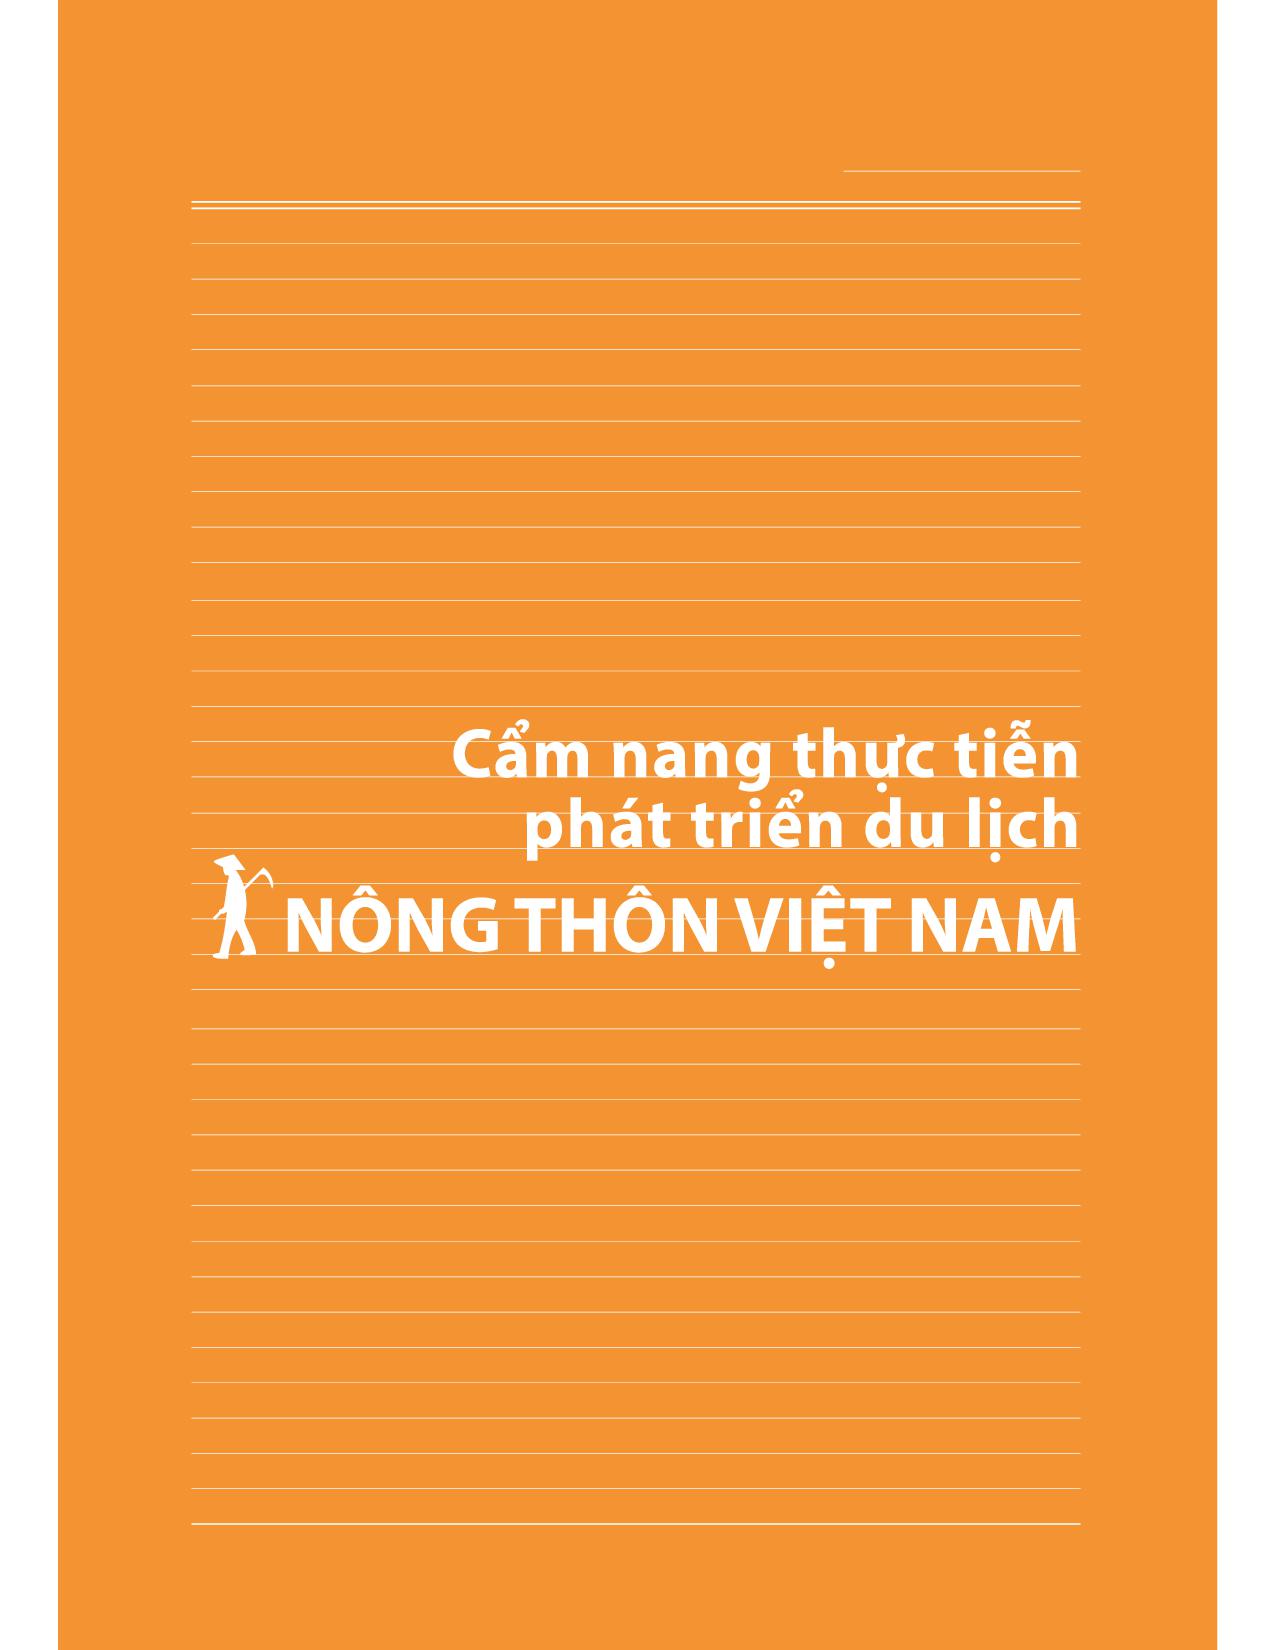 Cẩm nang thực tiễn phát triển du lịch nông thôn Việt Nam